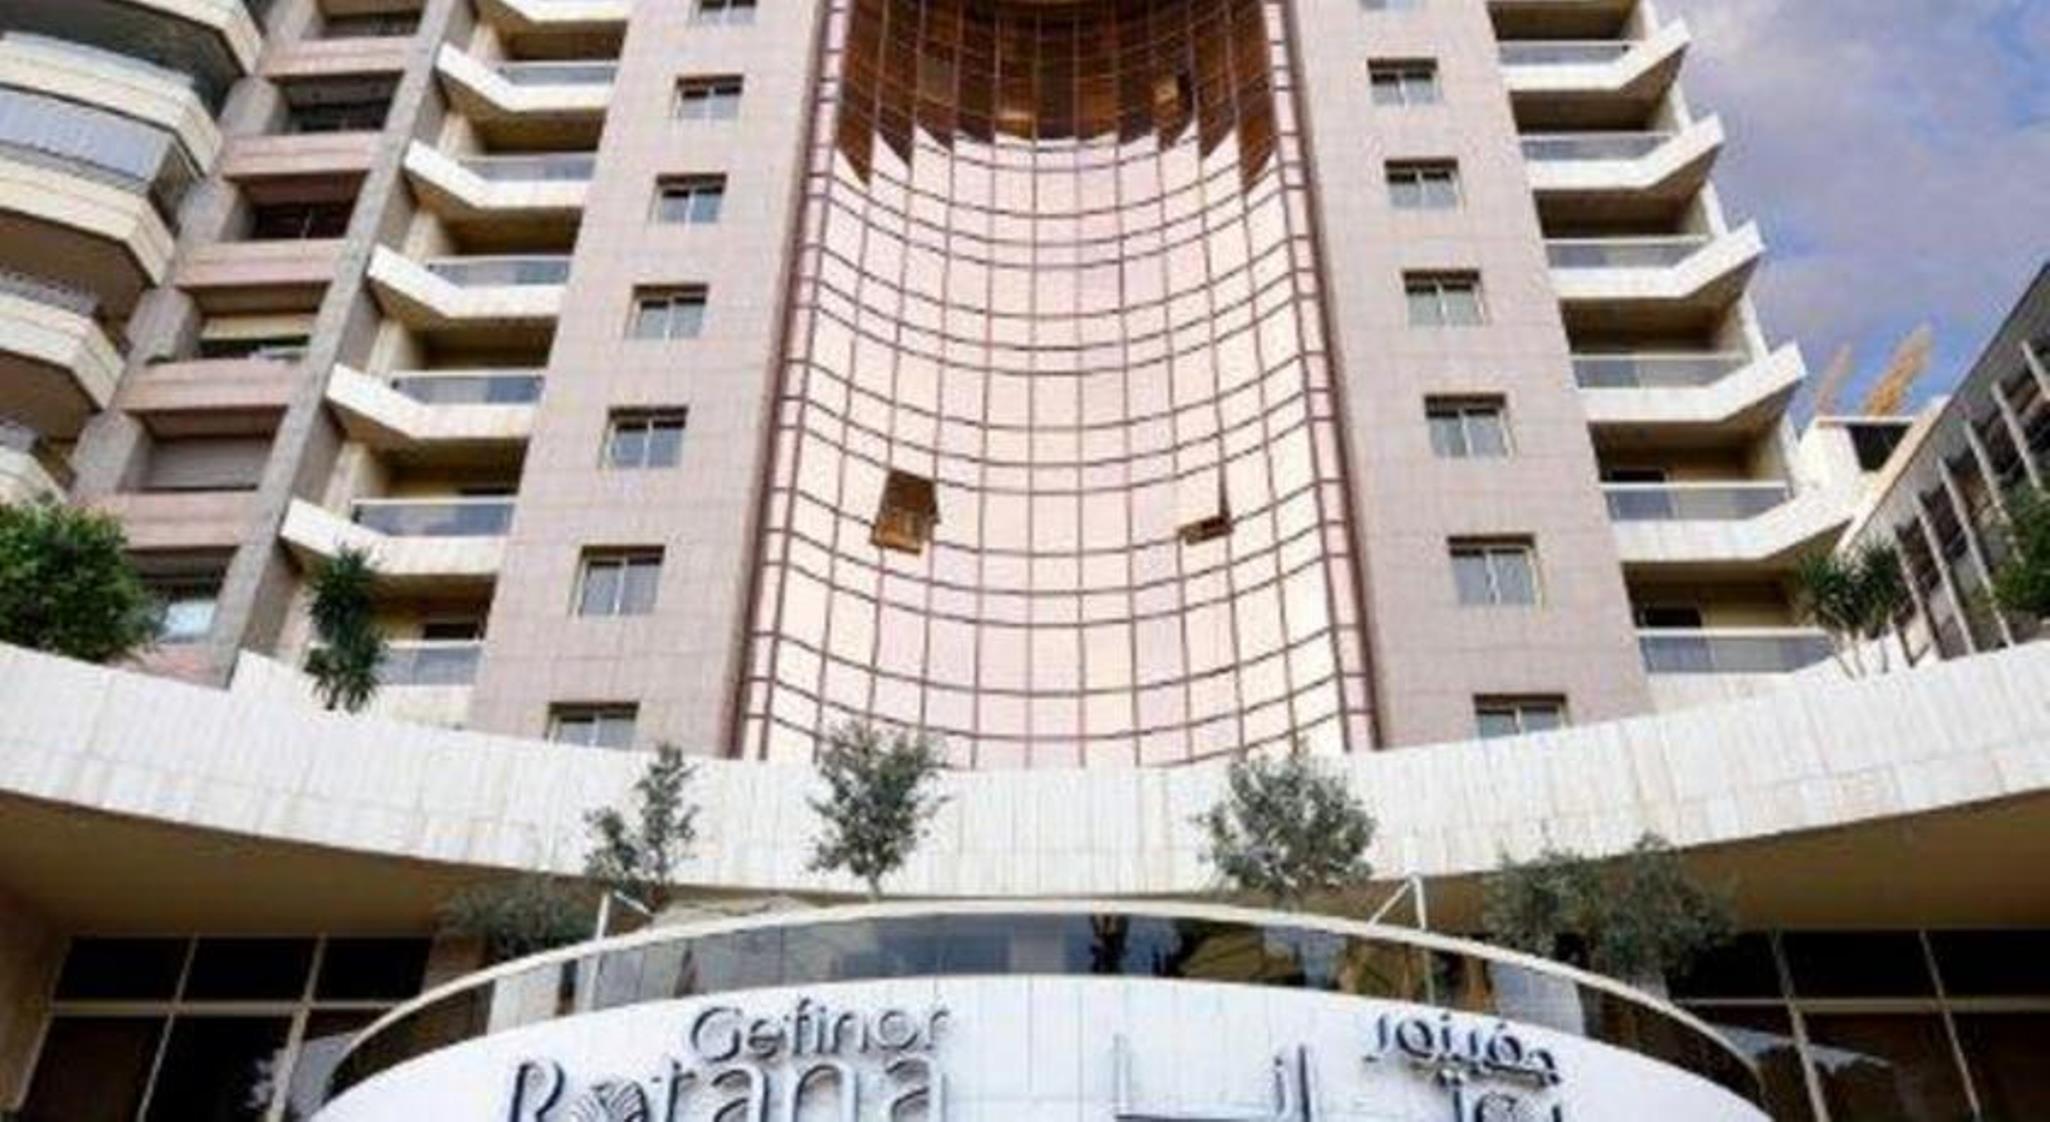 Gefinor Rotana - Beirut Hotell Exteriör bild